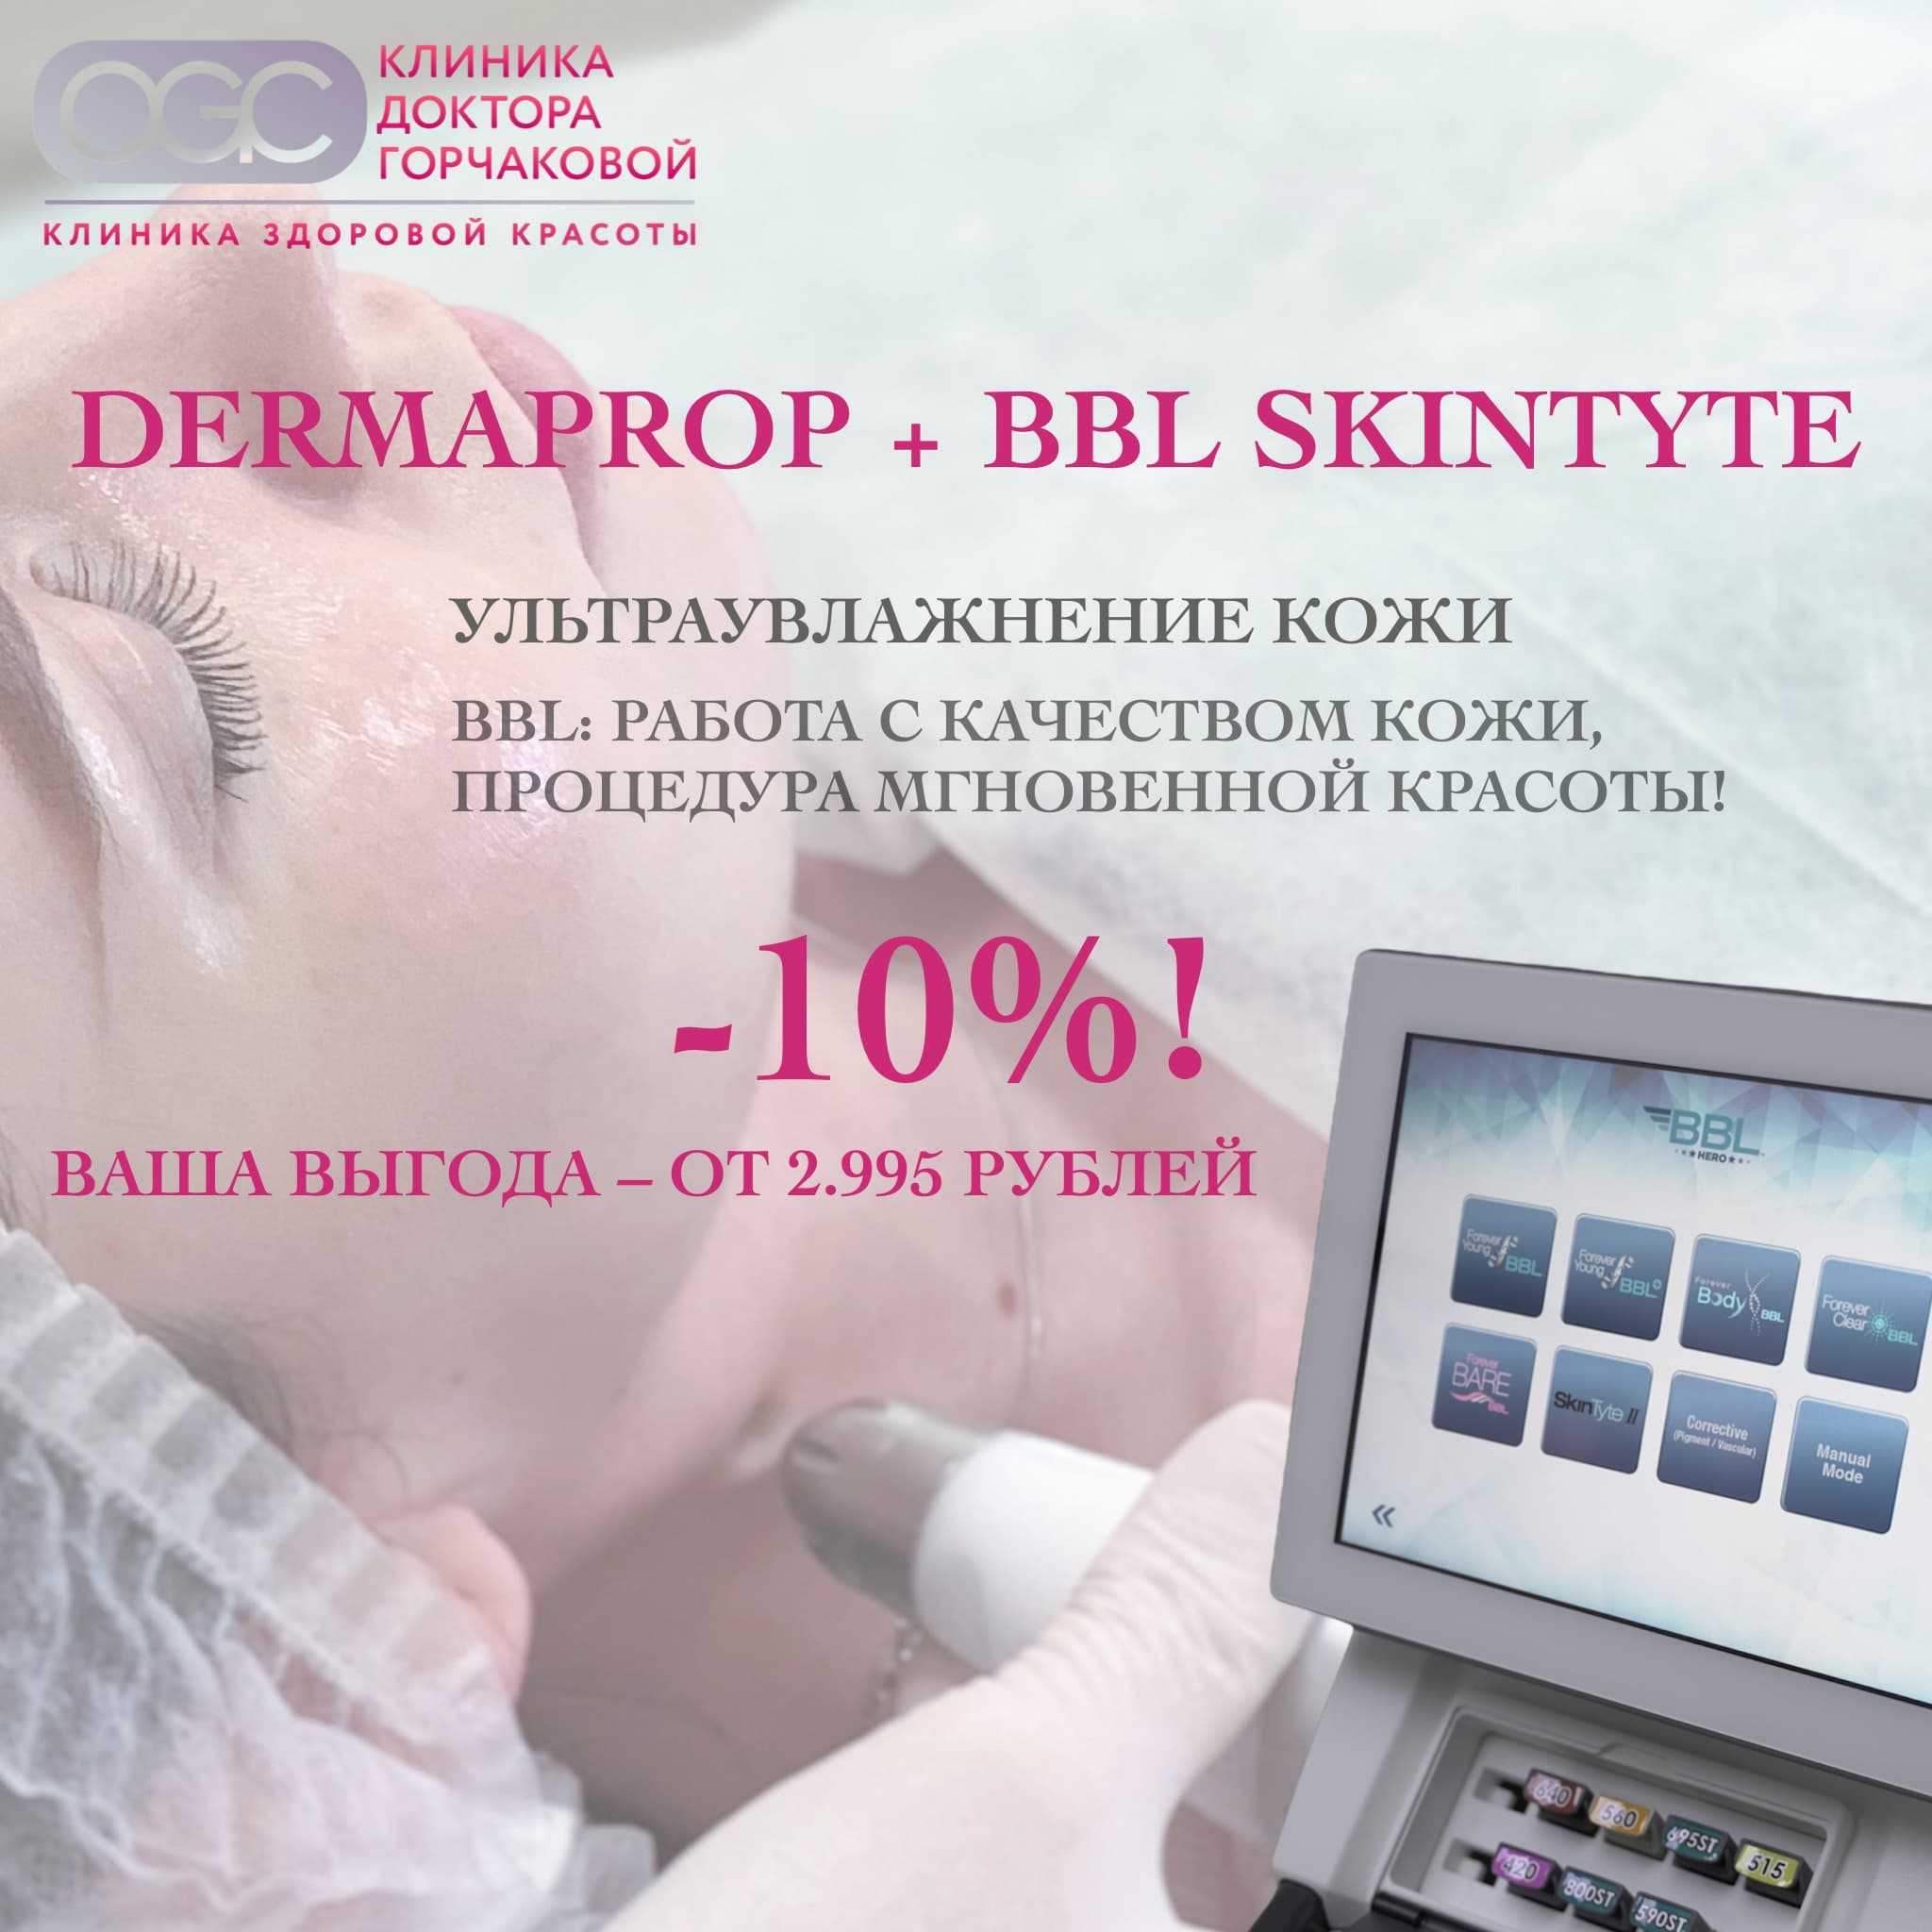 Дермапроп + BBL SkinTyte: Ограниченное предложение со скидкой 10%!